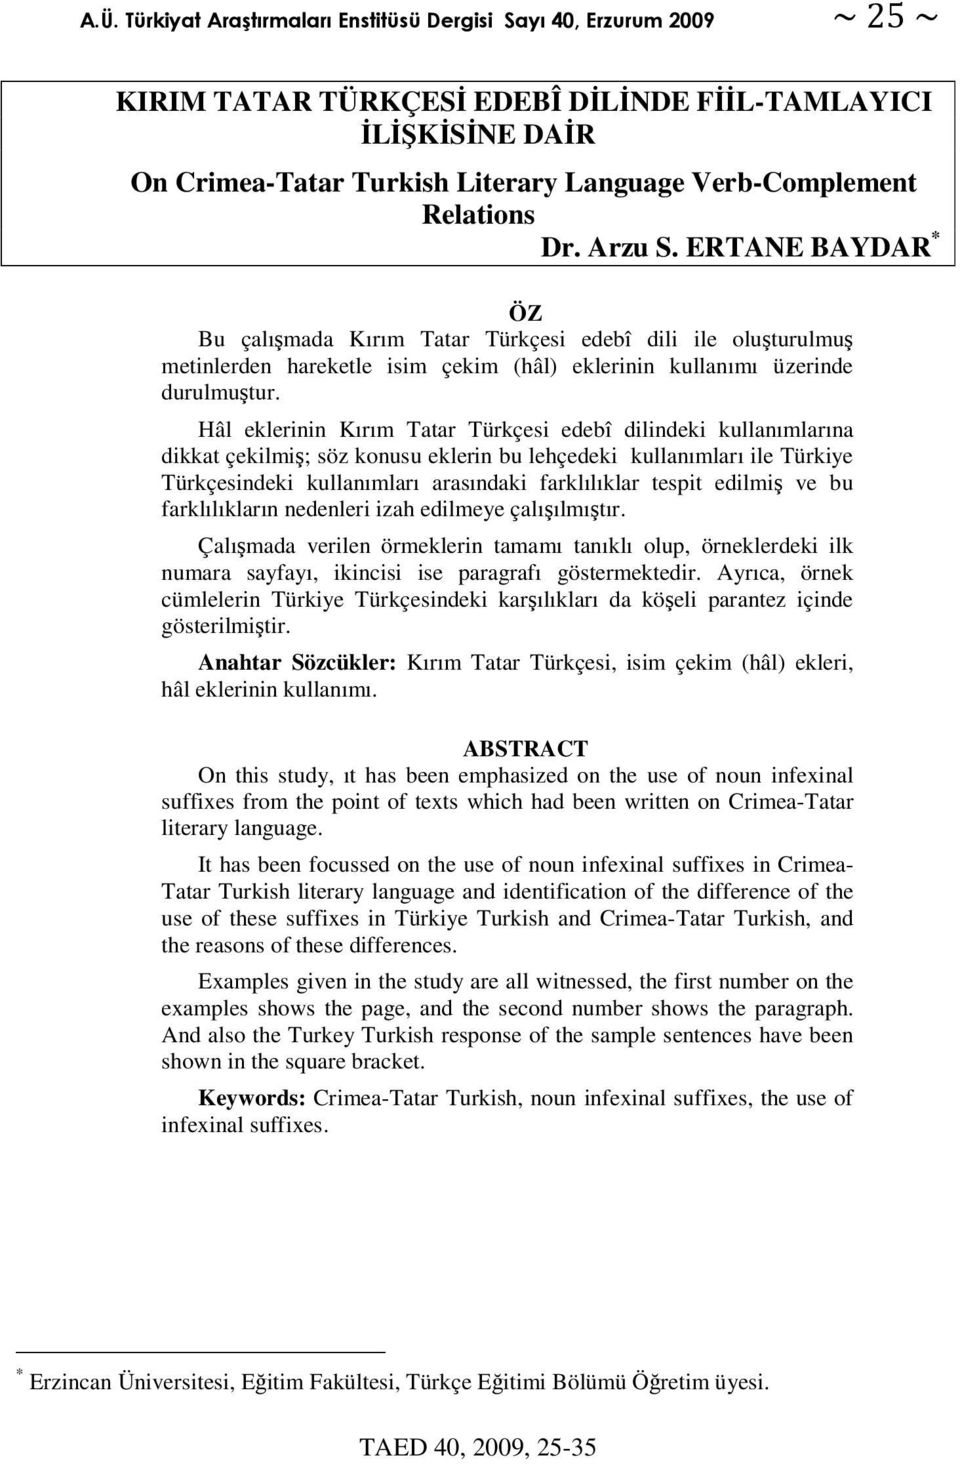 Hâl eklerinin Kırım Tatar Türkçesi edebî dilindeki kullanımlarına dikkat çekilmi; söz konusu eklerin bu lehçedeki kullanımları ile Türkiye Türkçesindeki kullanımları arasındaki farklılıklar tespit